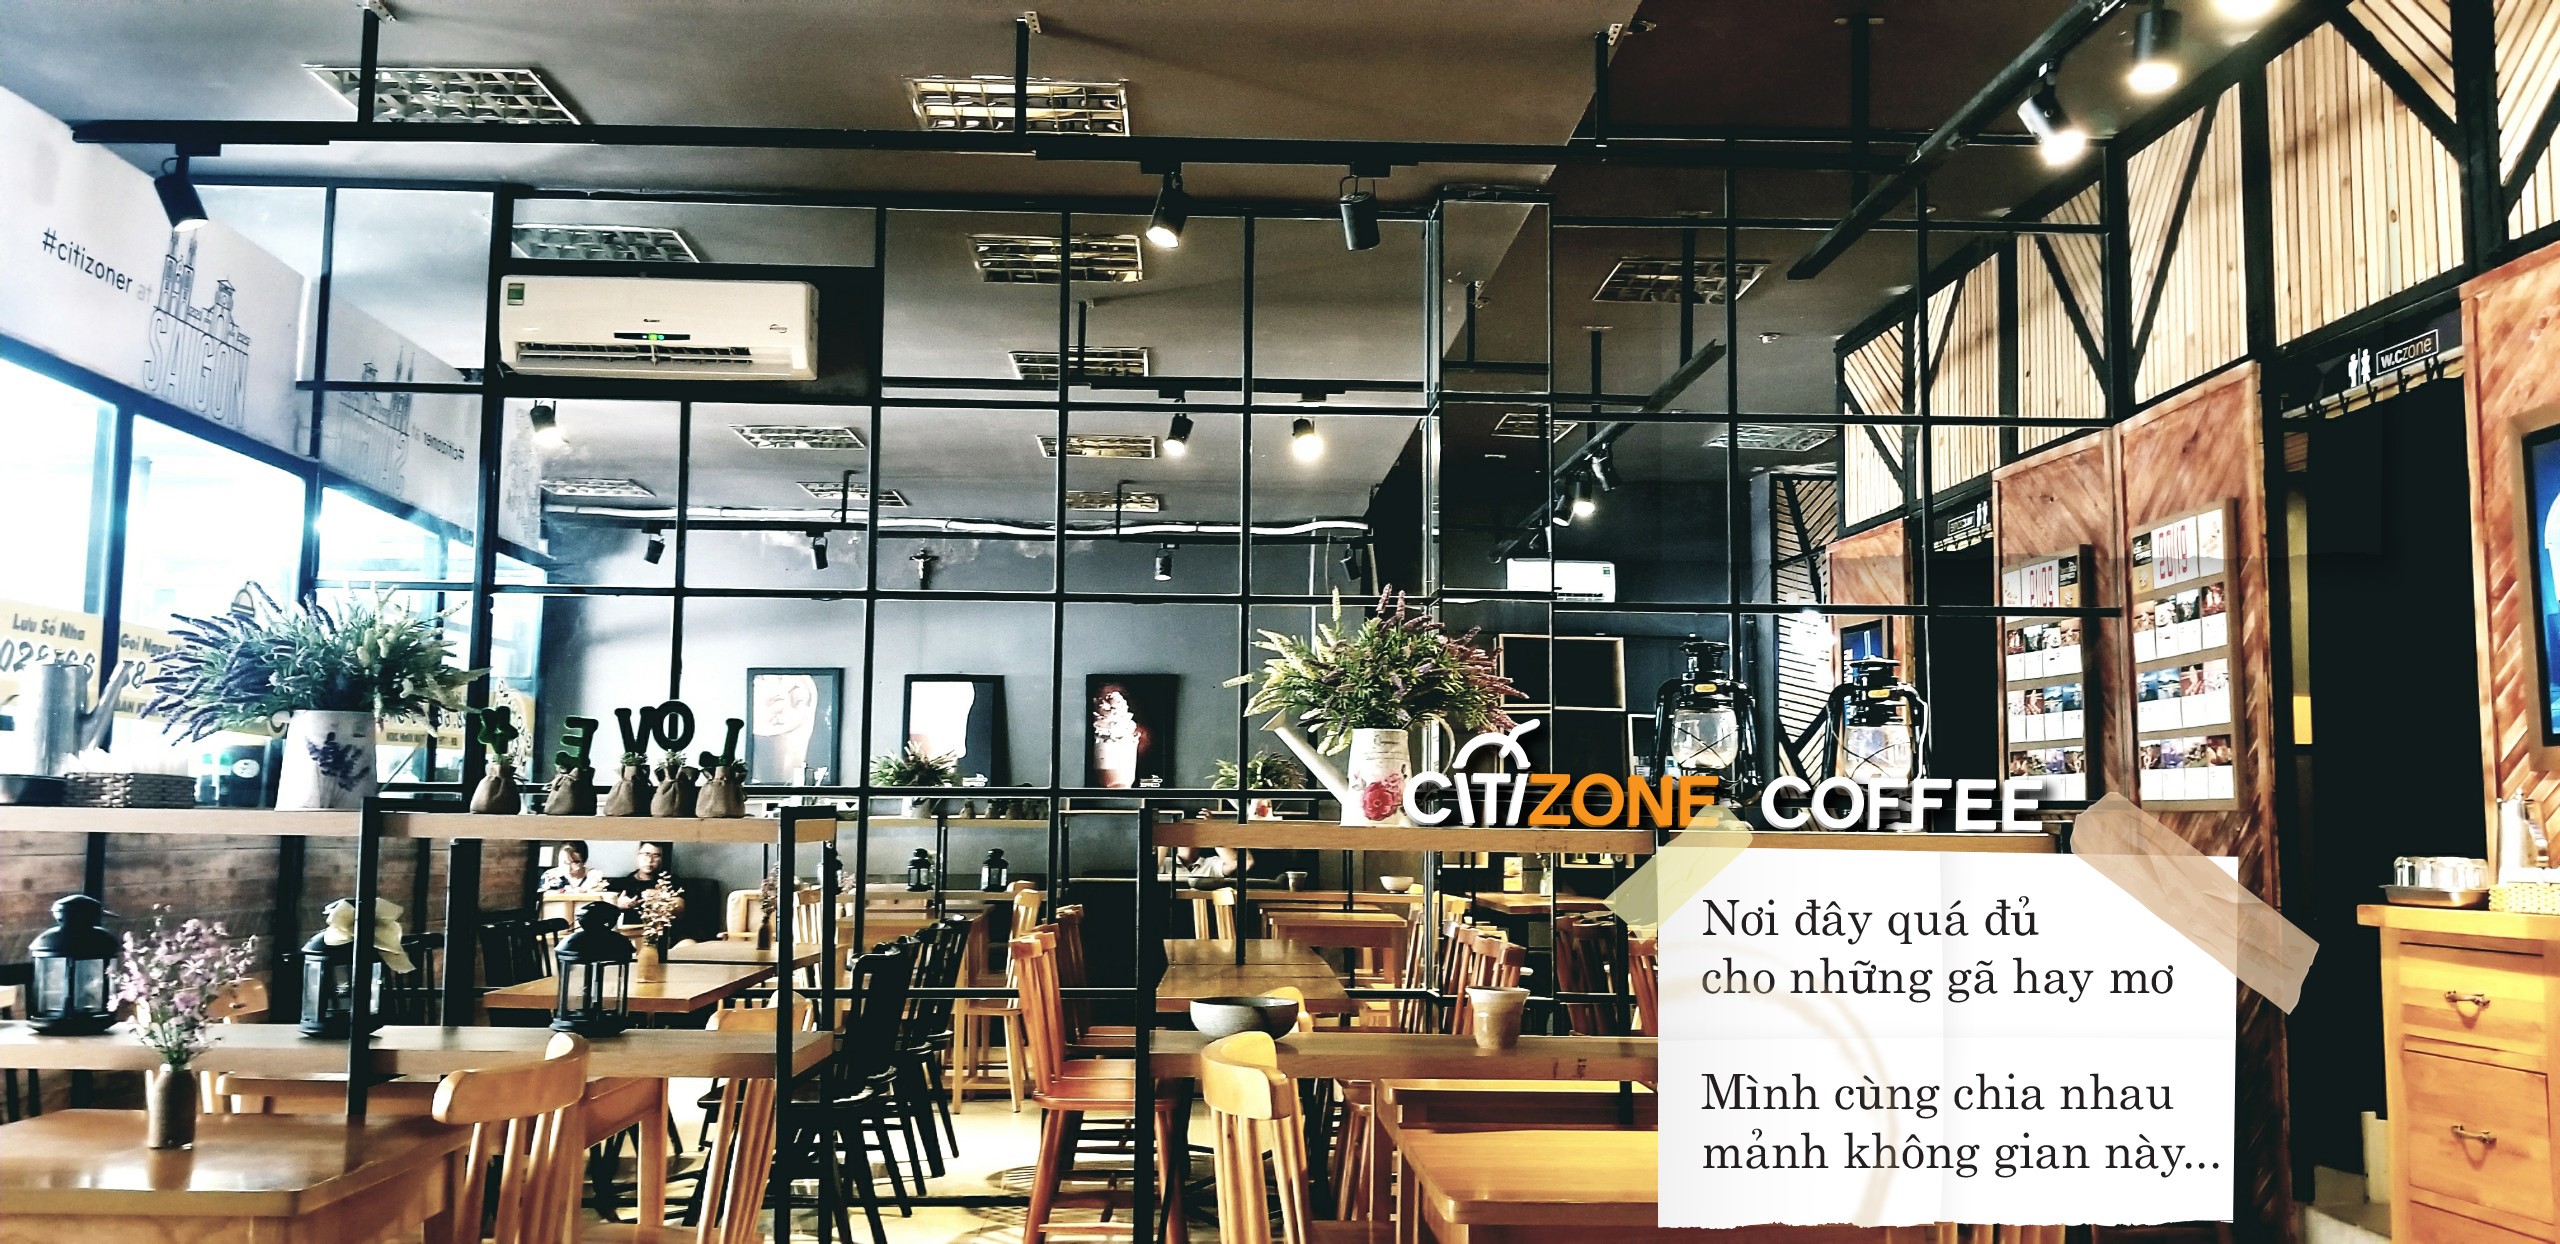 Không gian bên trong quán Citizone Coffee